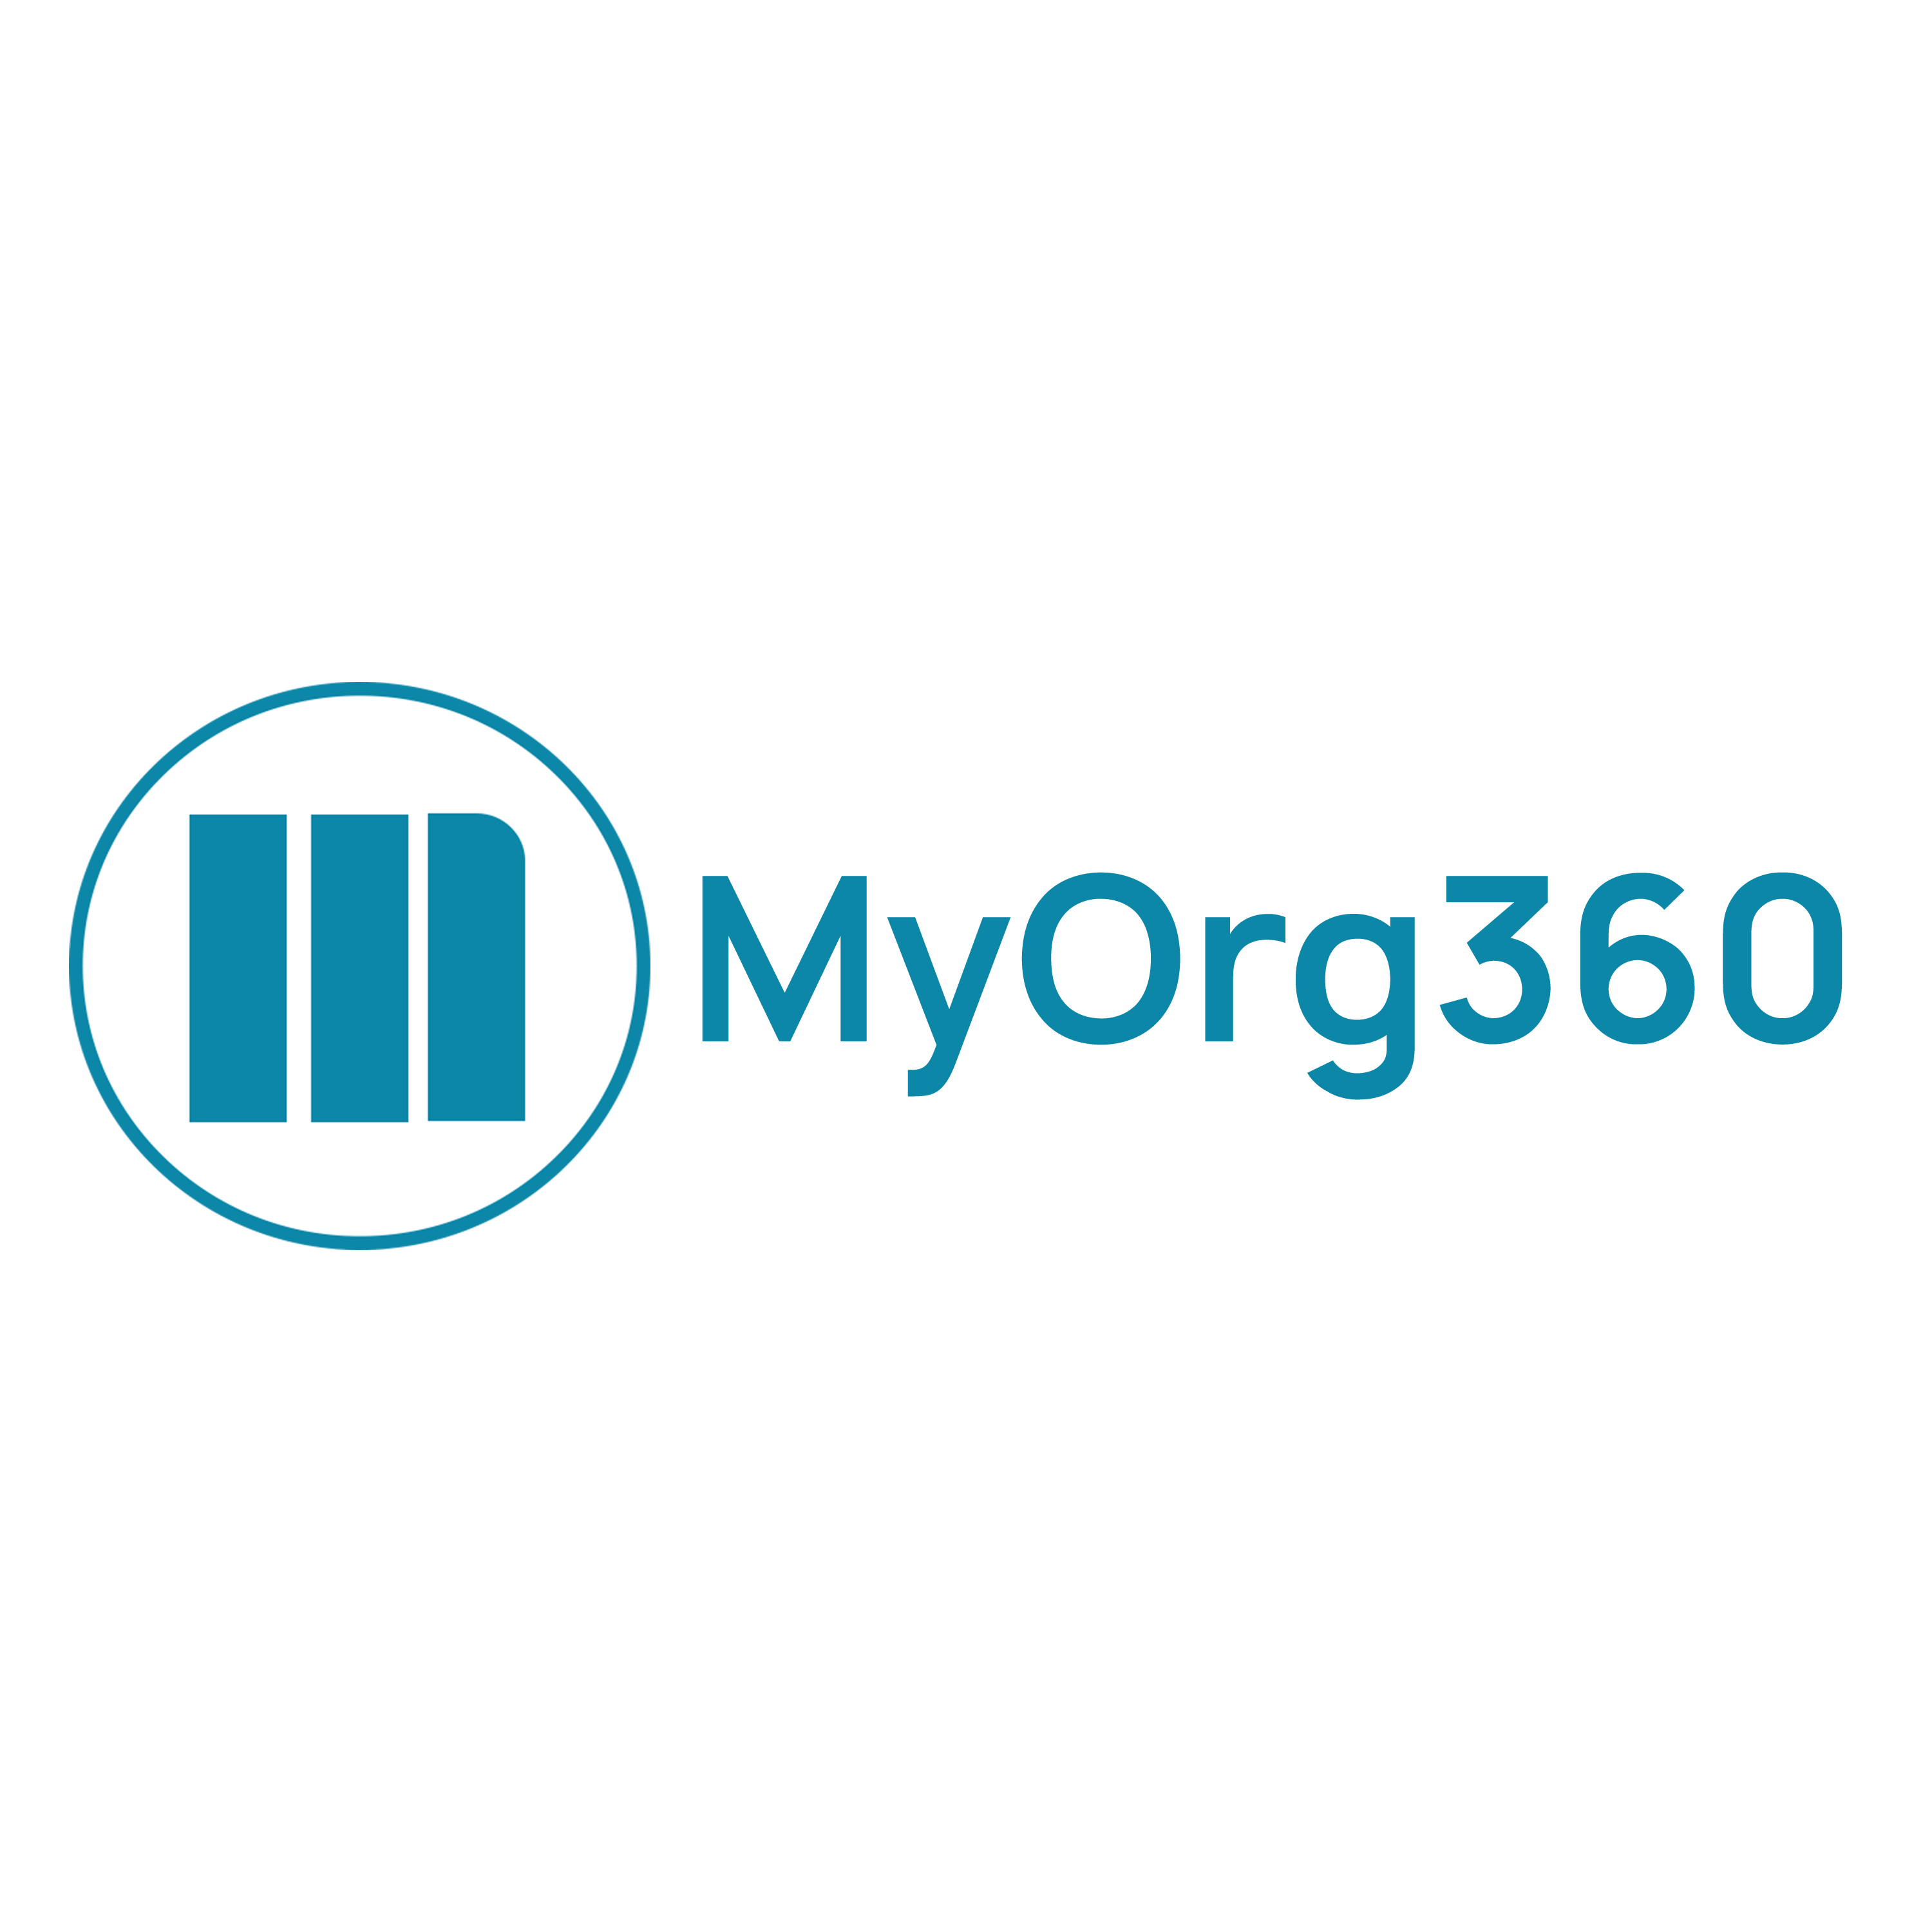 MyOrg360